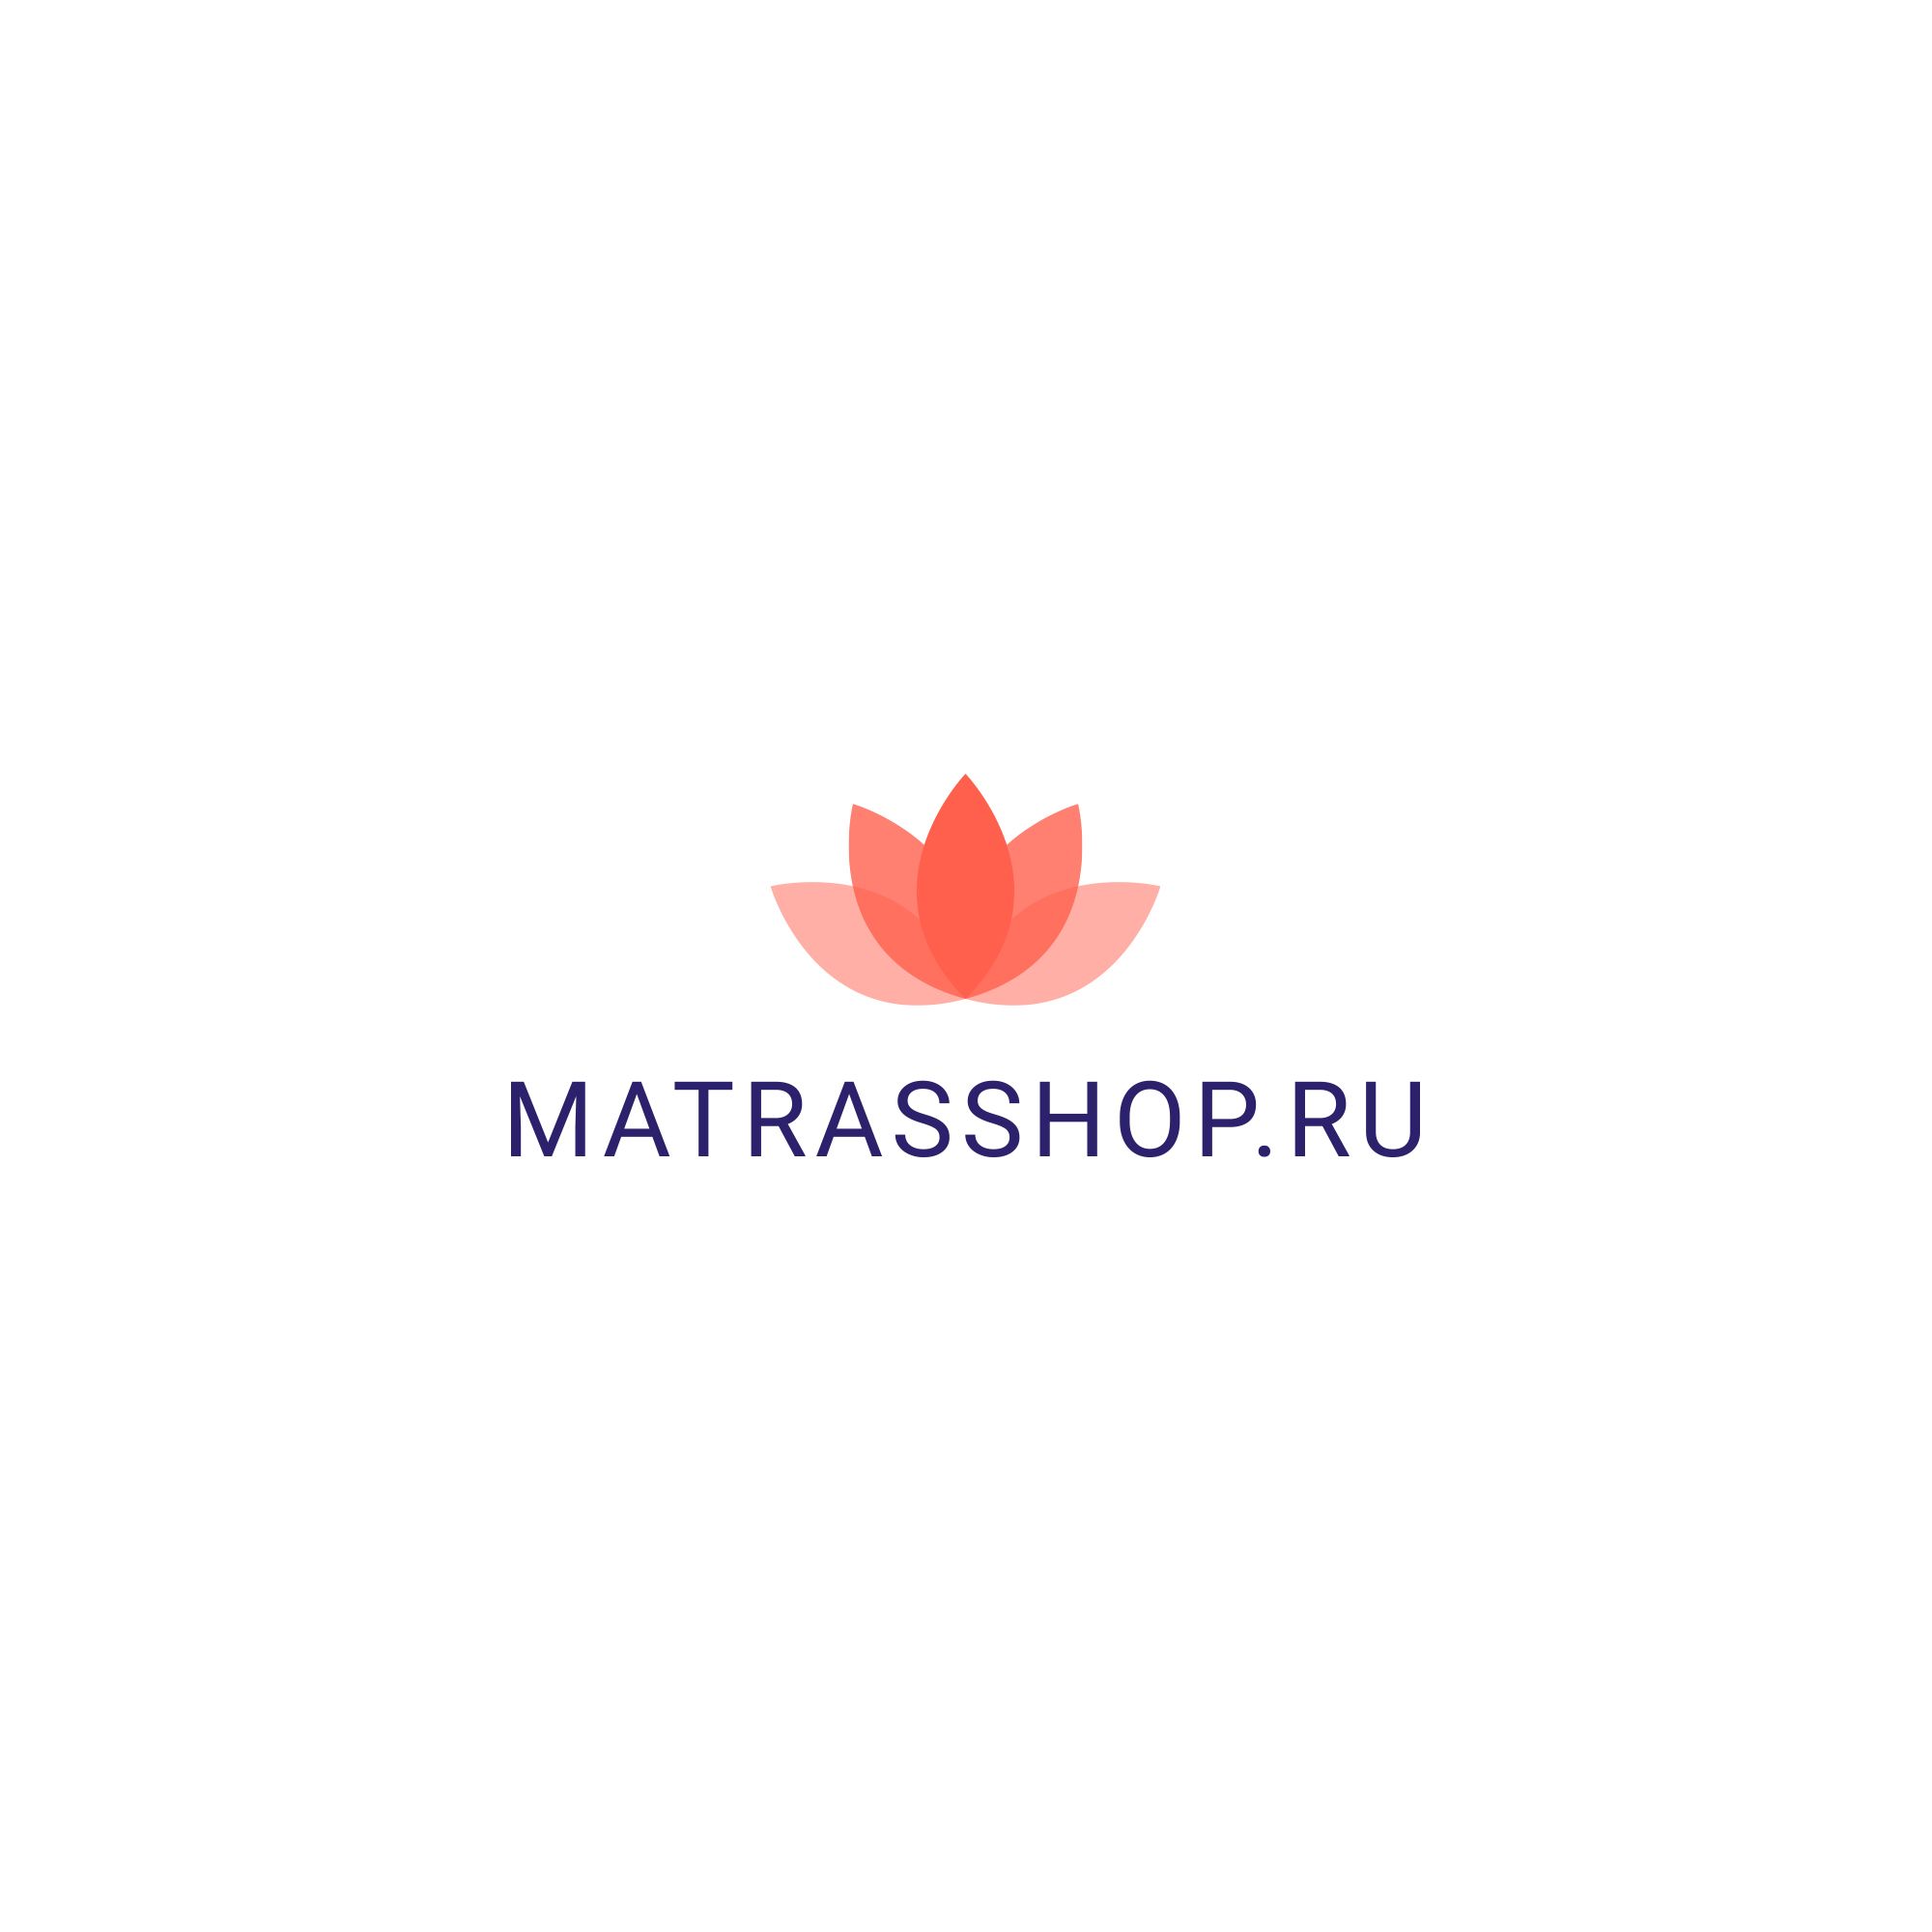 Логотип для Логотип для сети магазинов MATRASSHOP.RU - дизайнер Vebjorn